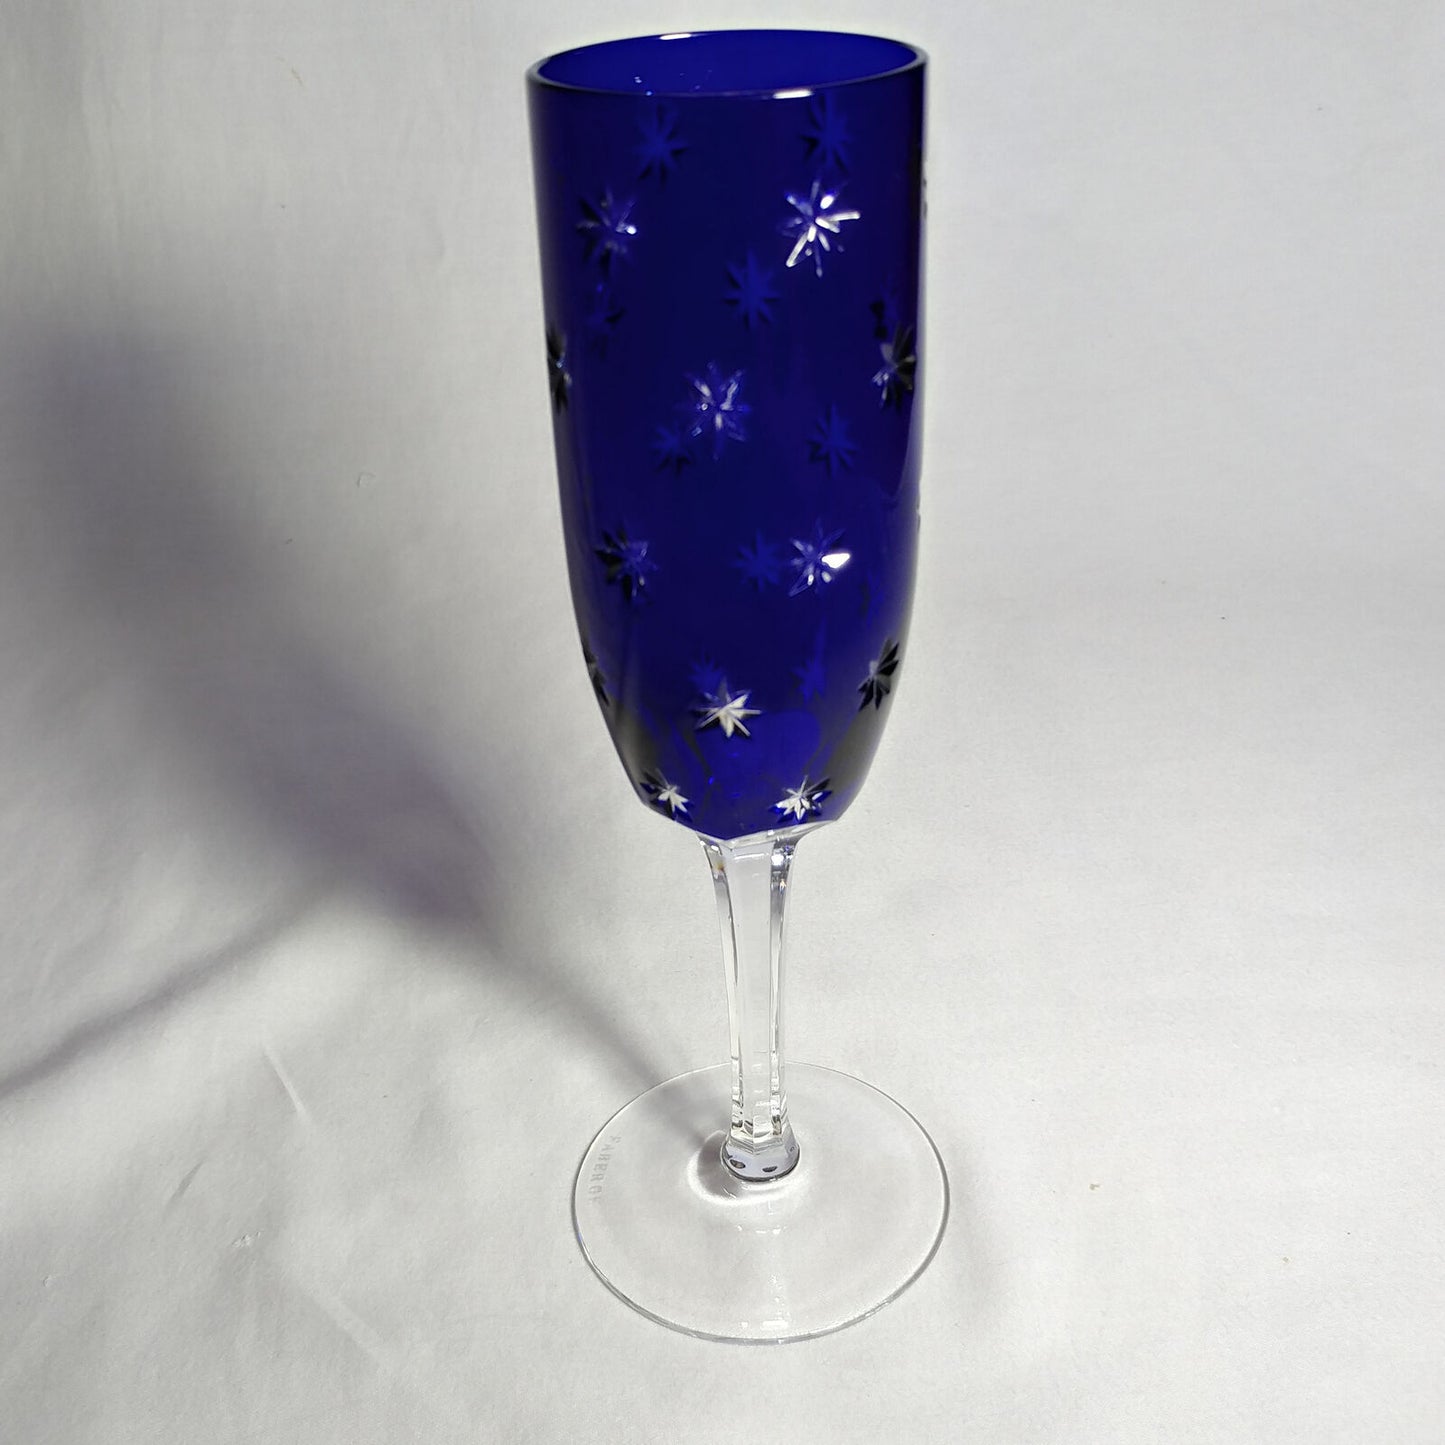 Faberge Galaxy Cobalt Bleu Crystal Flute Glass